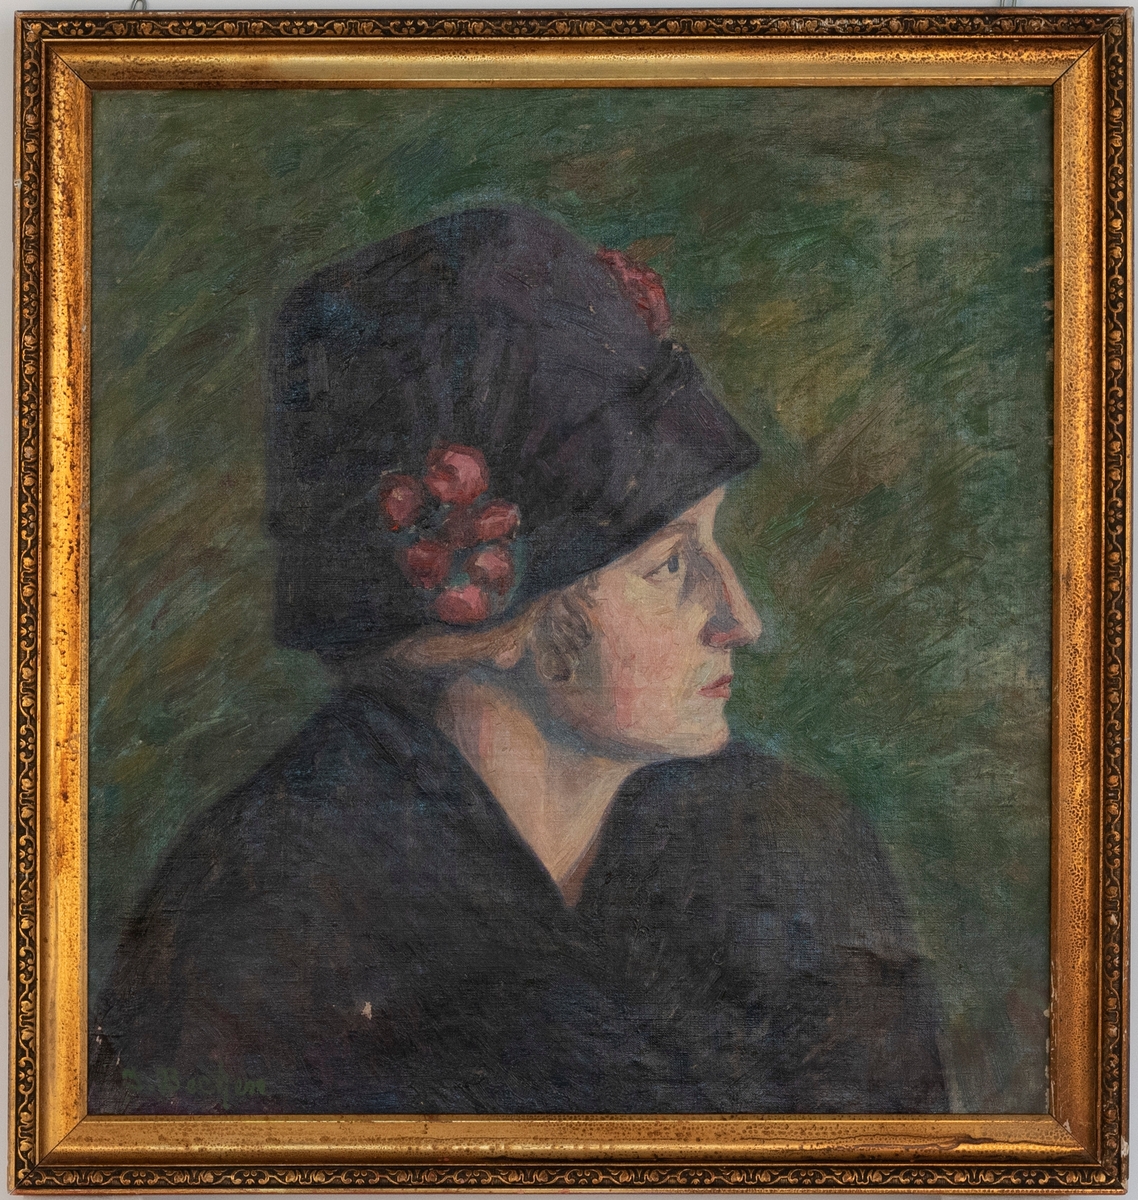 Portrett av kvinne i blått antrekk med hatt - i profil.